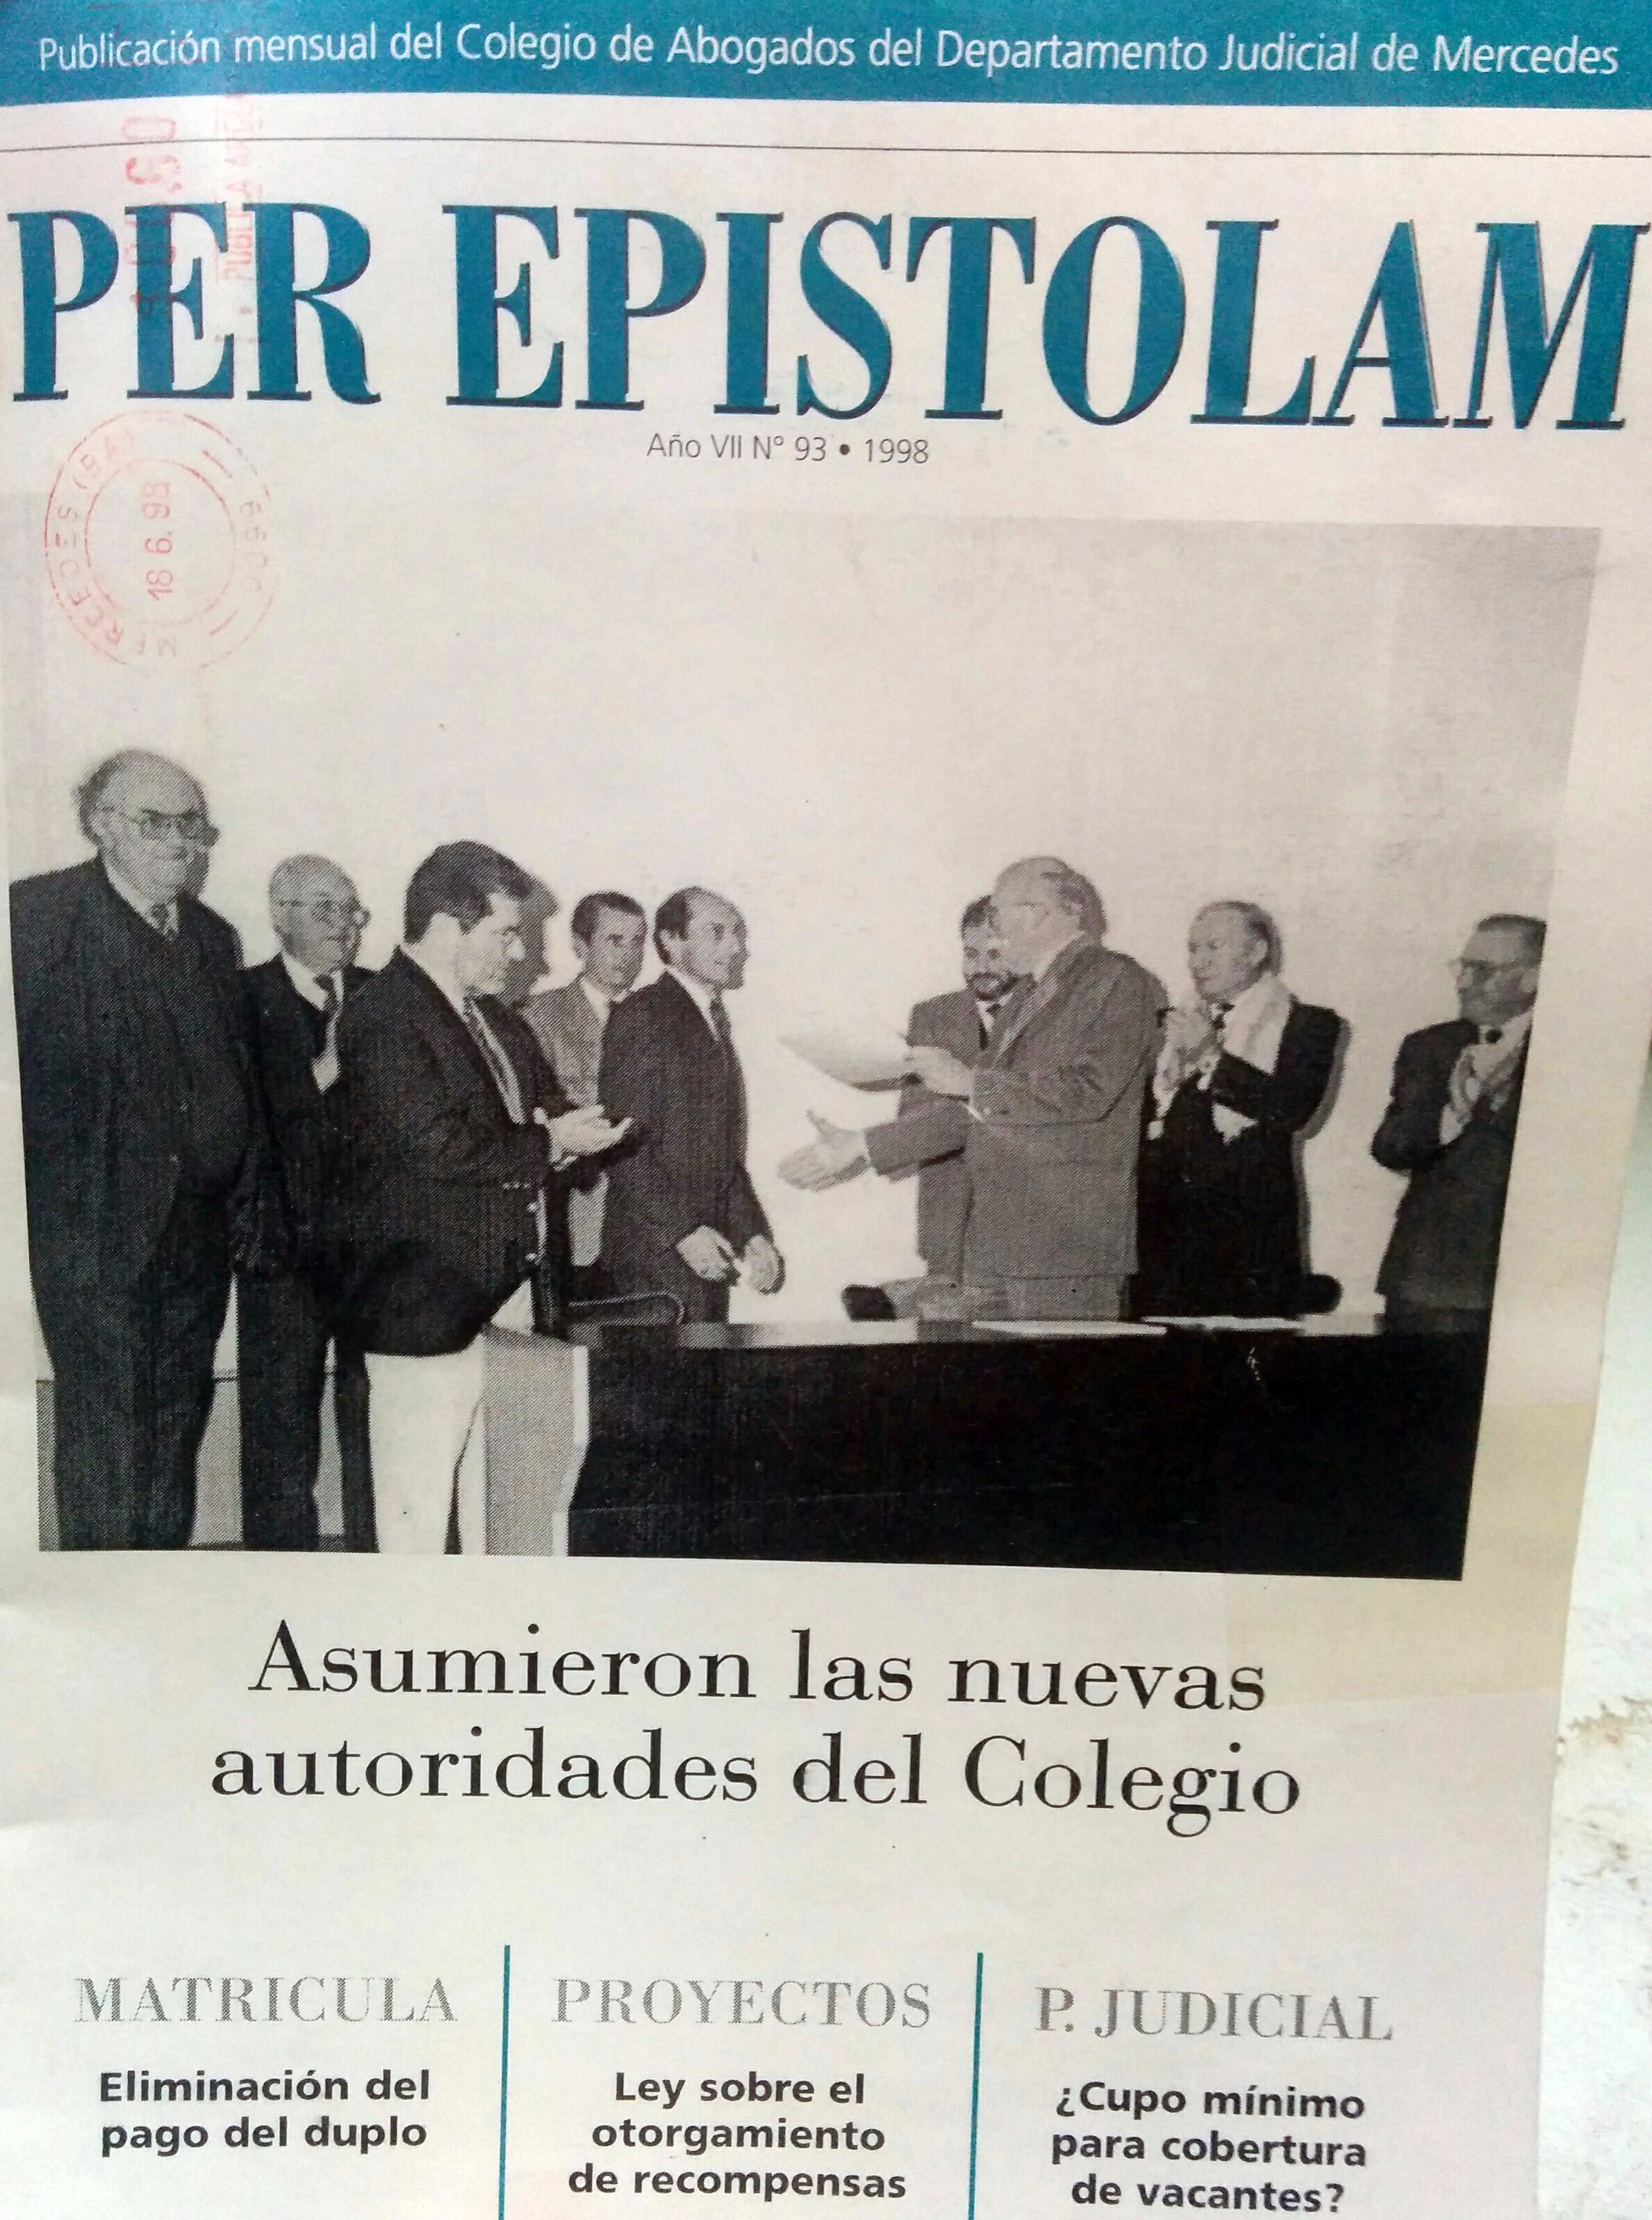 Revista "Per Epistolam", del Colegio de Abogados, de Mercedes (Nº93, año 1998).